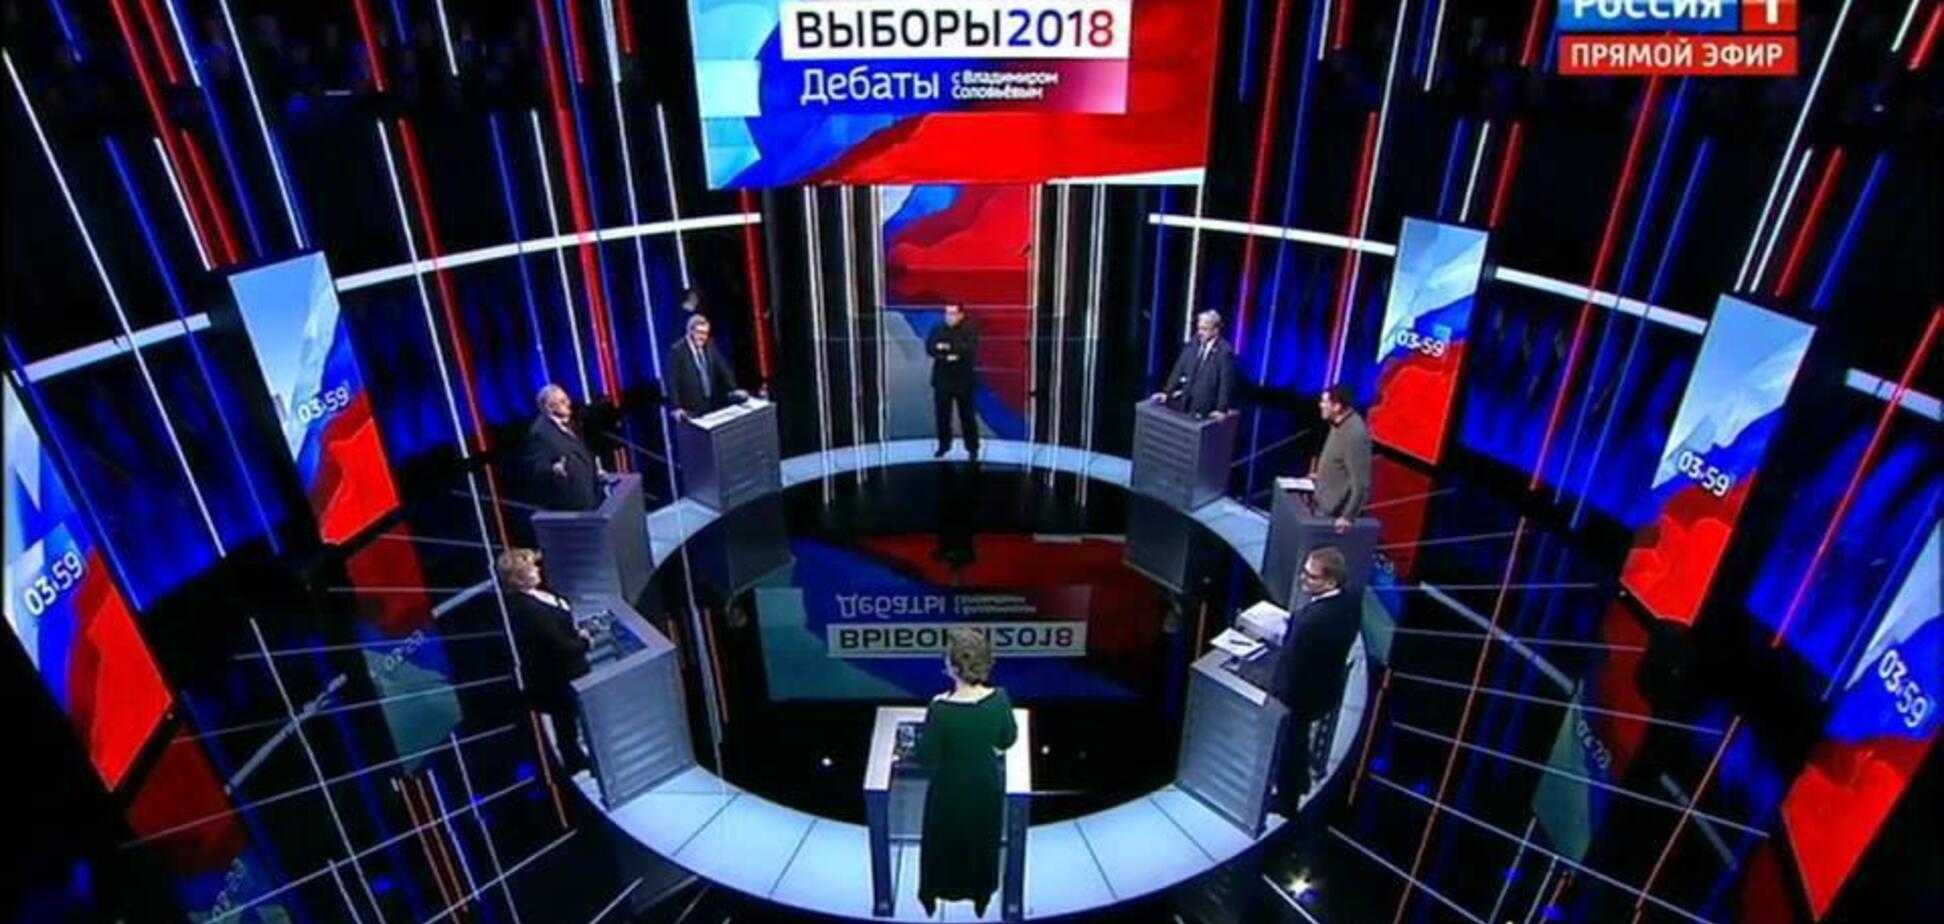 'Челюсть, с*ка, сломаю': конкурент Путина накинулся на журналиста во время дебатов